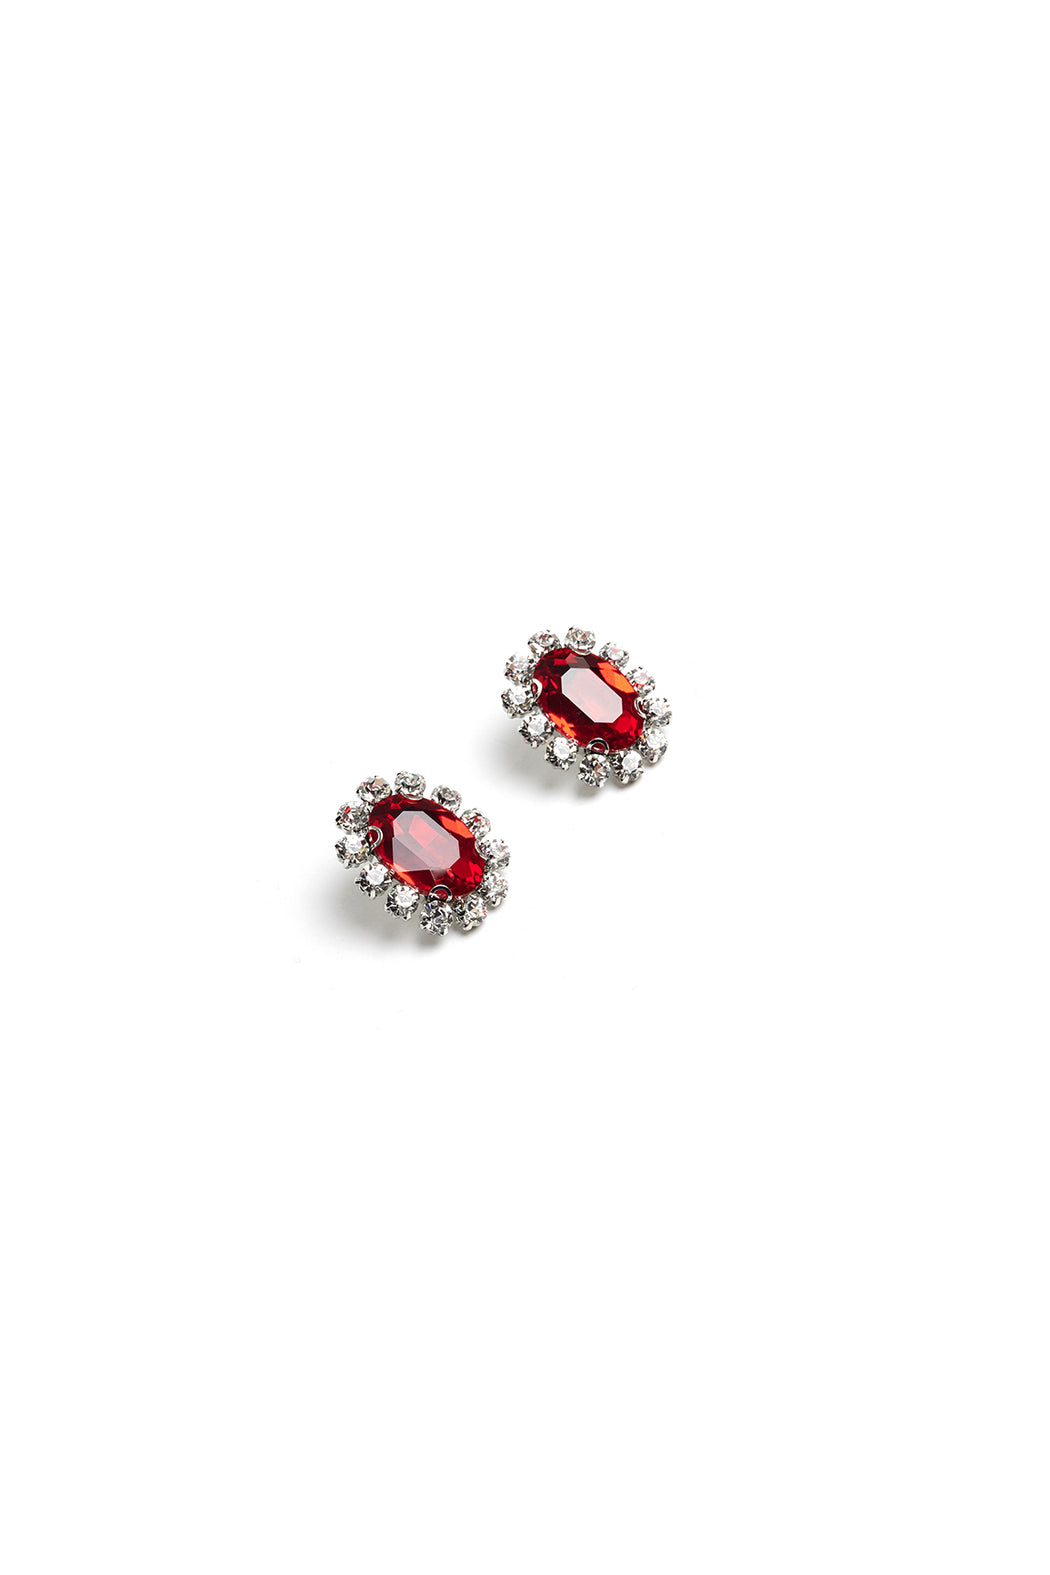 Costume Gemstone Earrings - Red